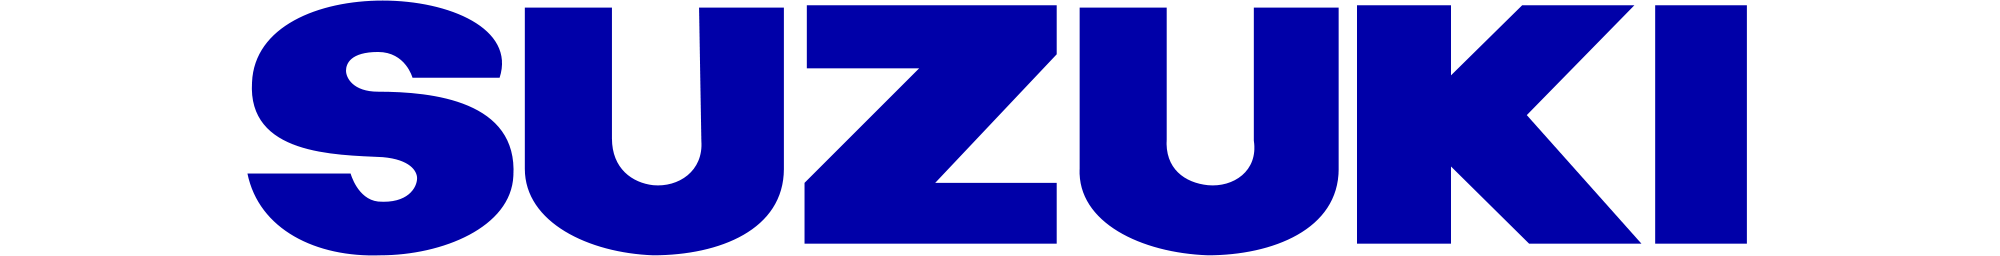 Suzuki logo pc PNG